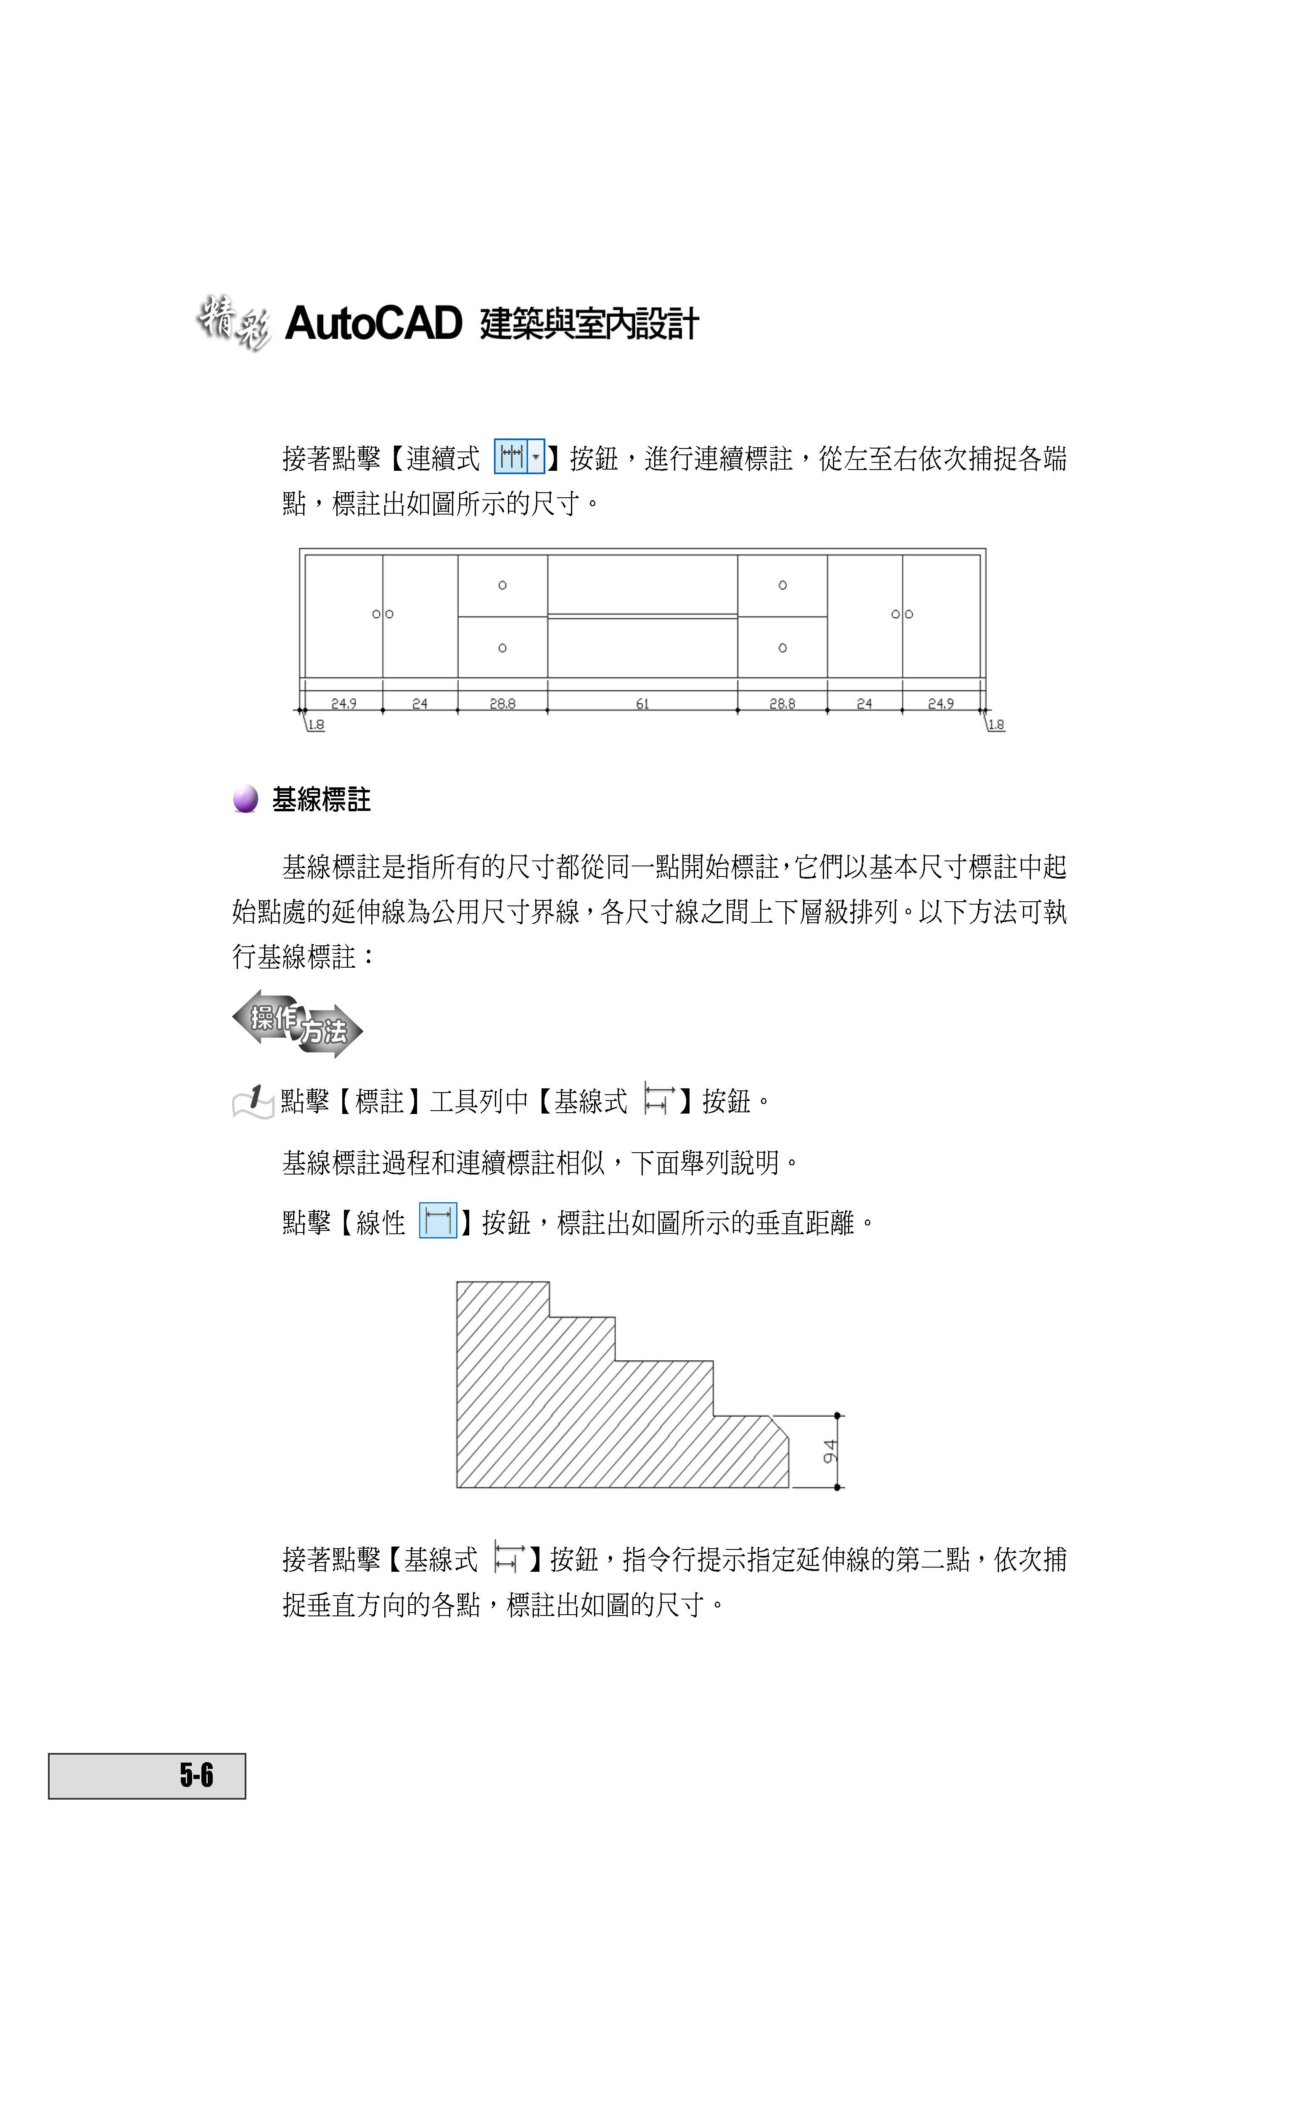 ►電腦資訊►暢銷書► 精彩 AutoCAD 2014 建築與室內設計(附綠色範例檔)